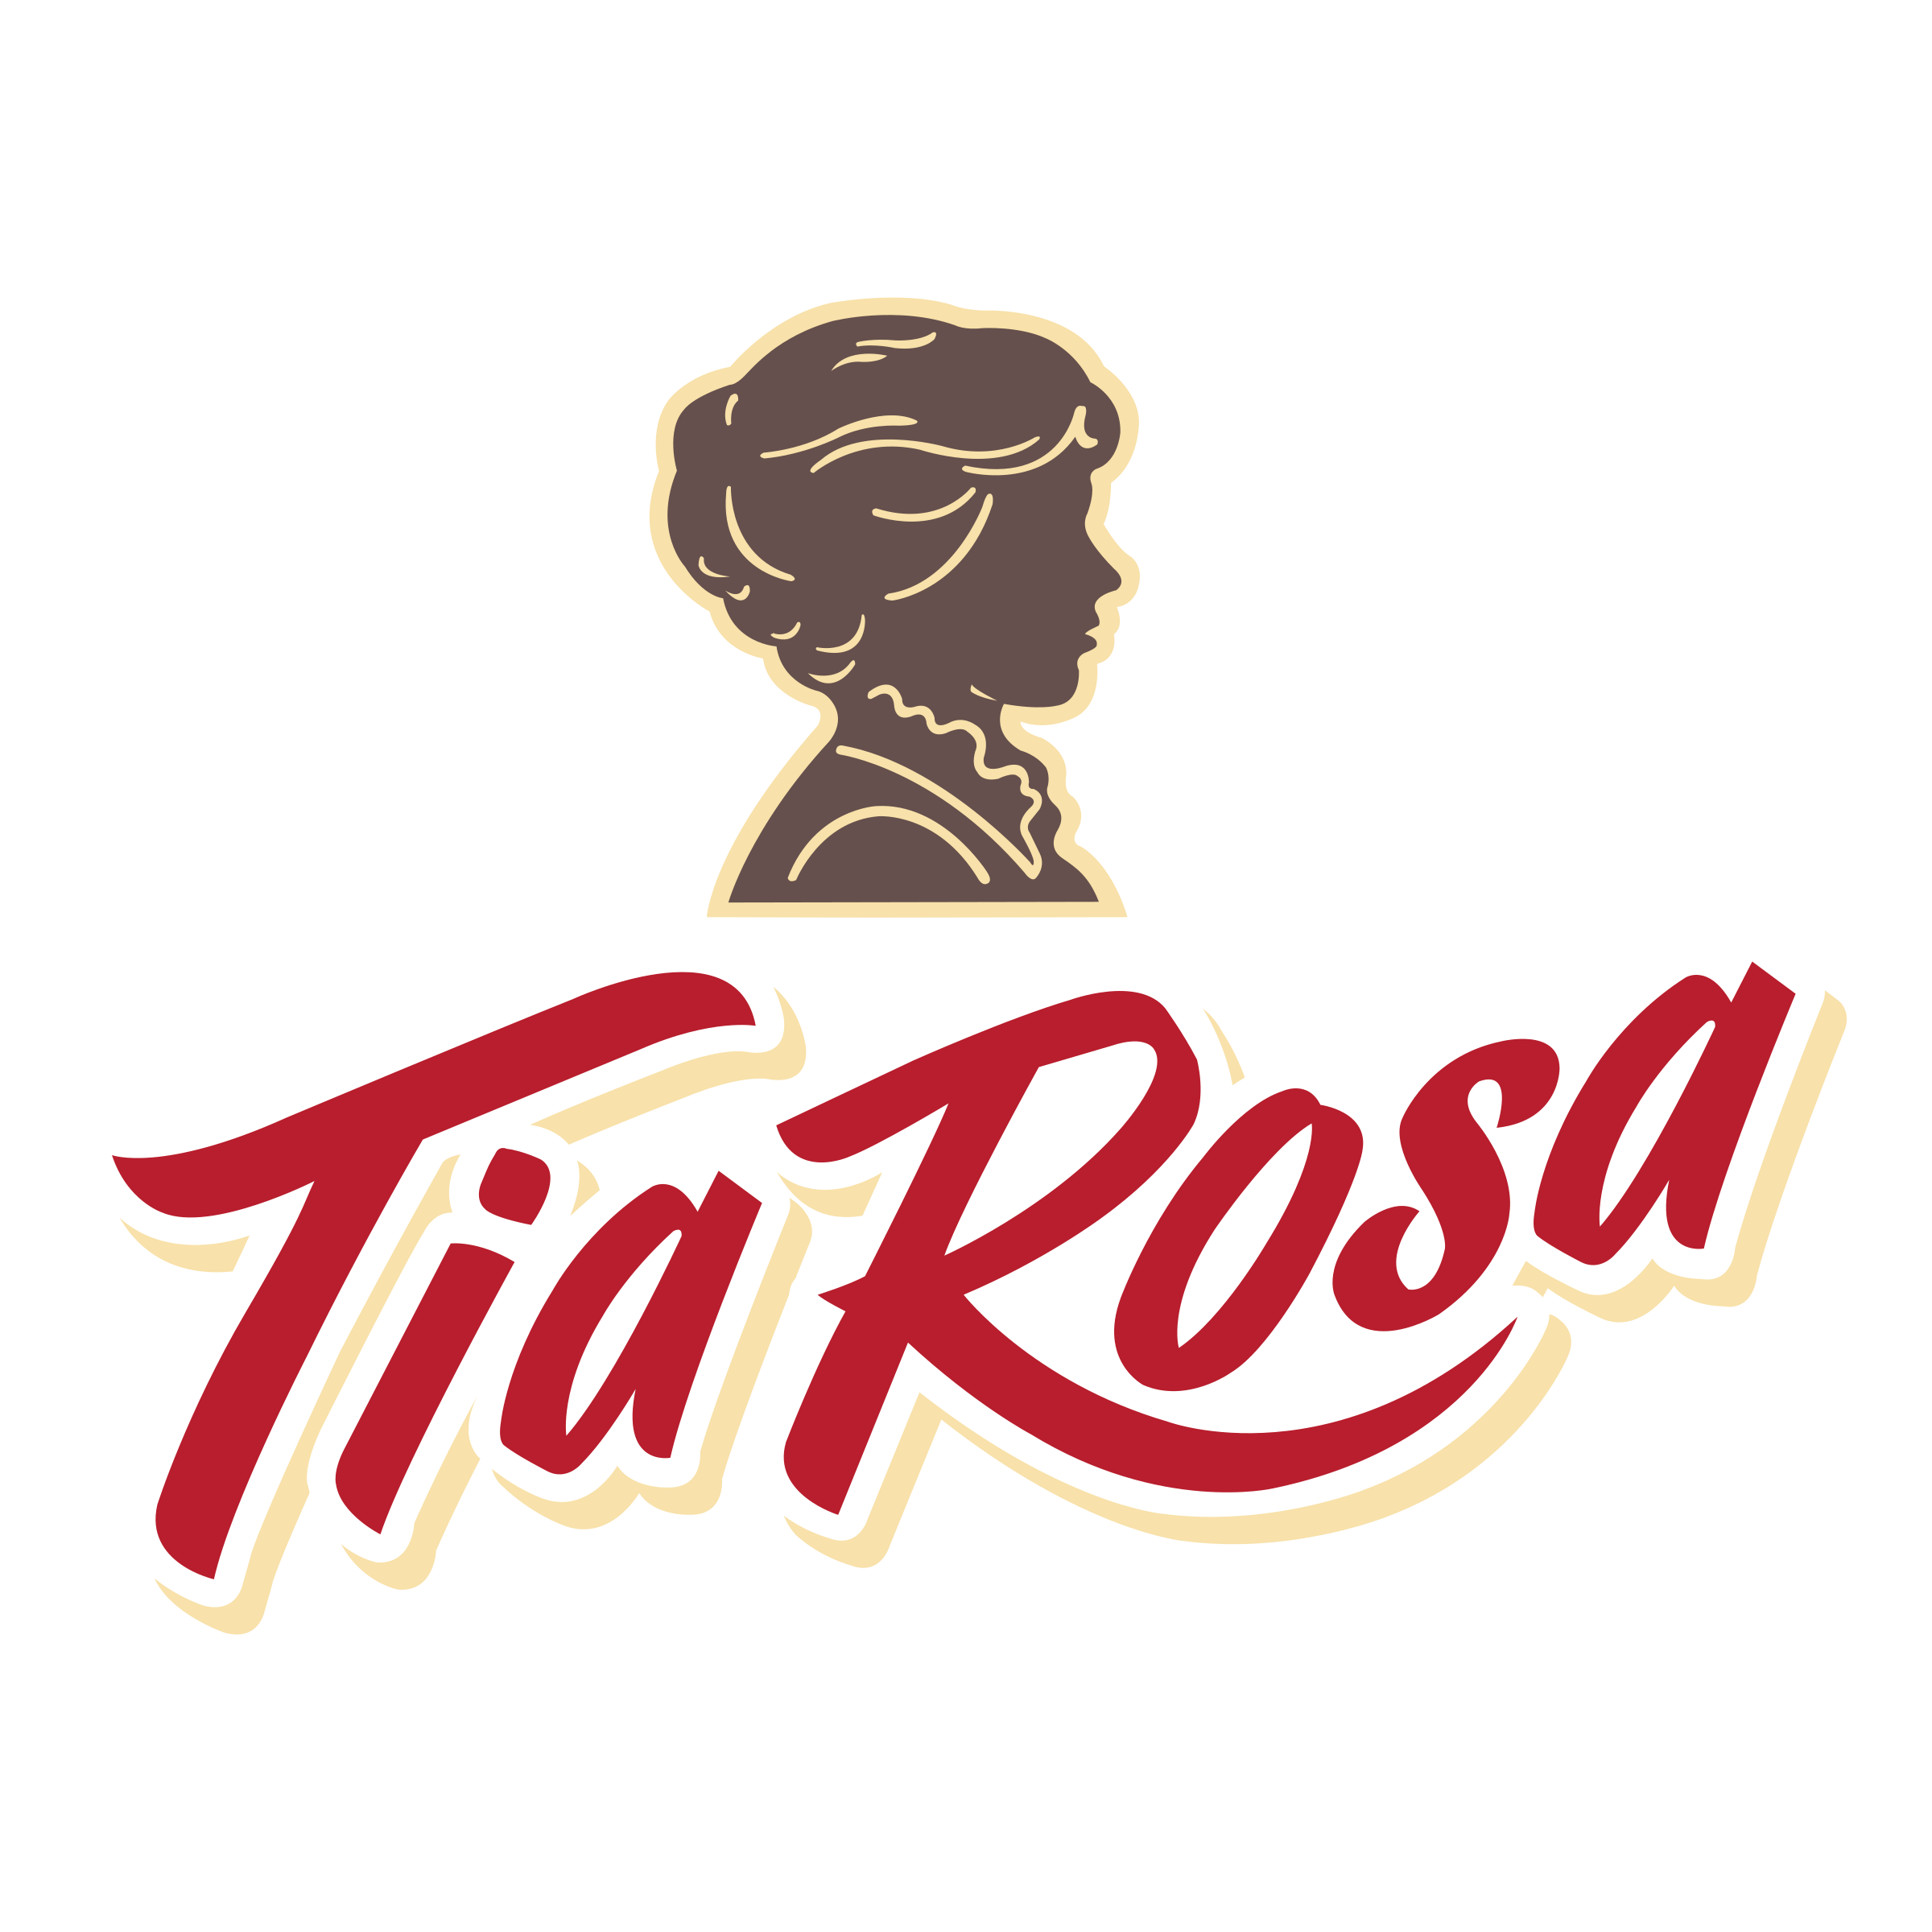 Rosa Logo - Tia Rosa Logo PNG Transparent & SVG Vector - Freebie Supply